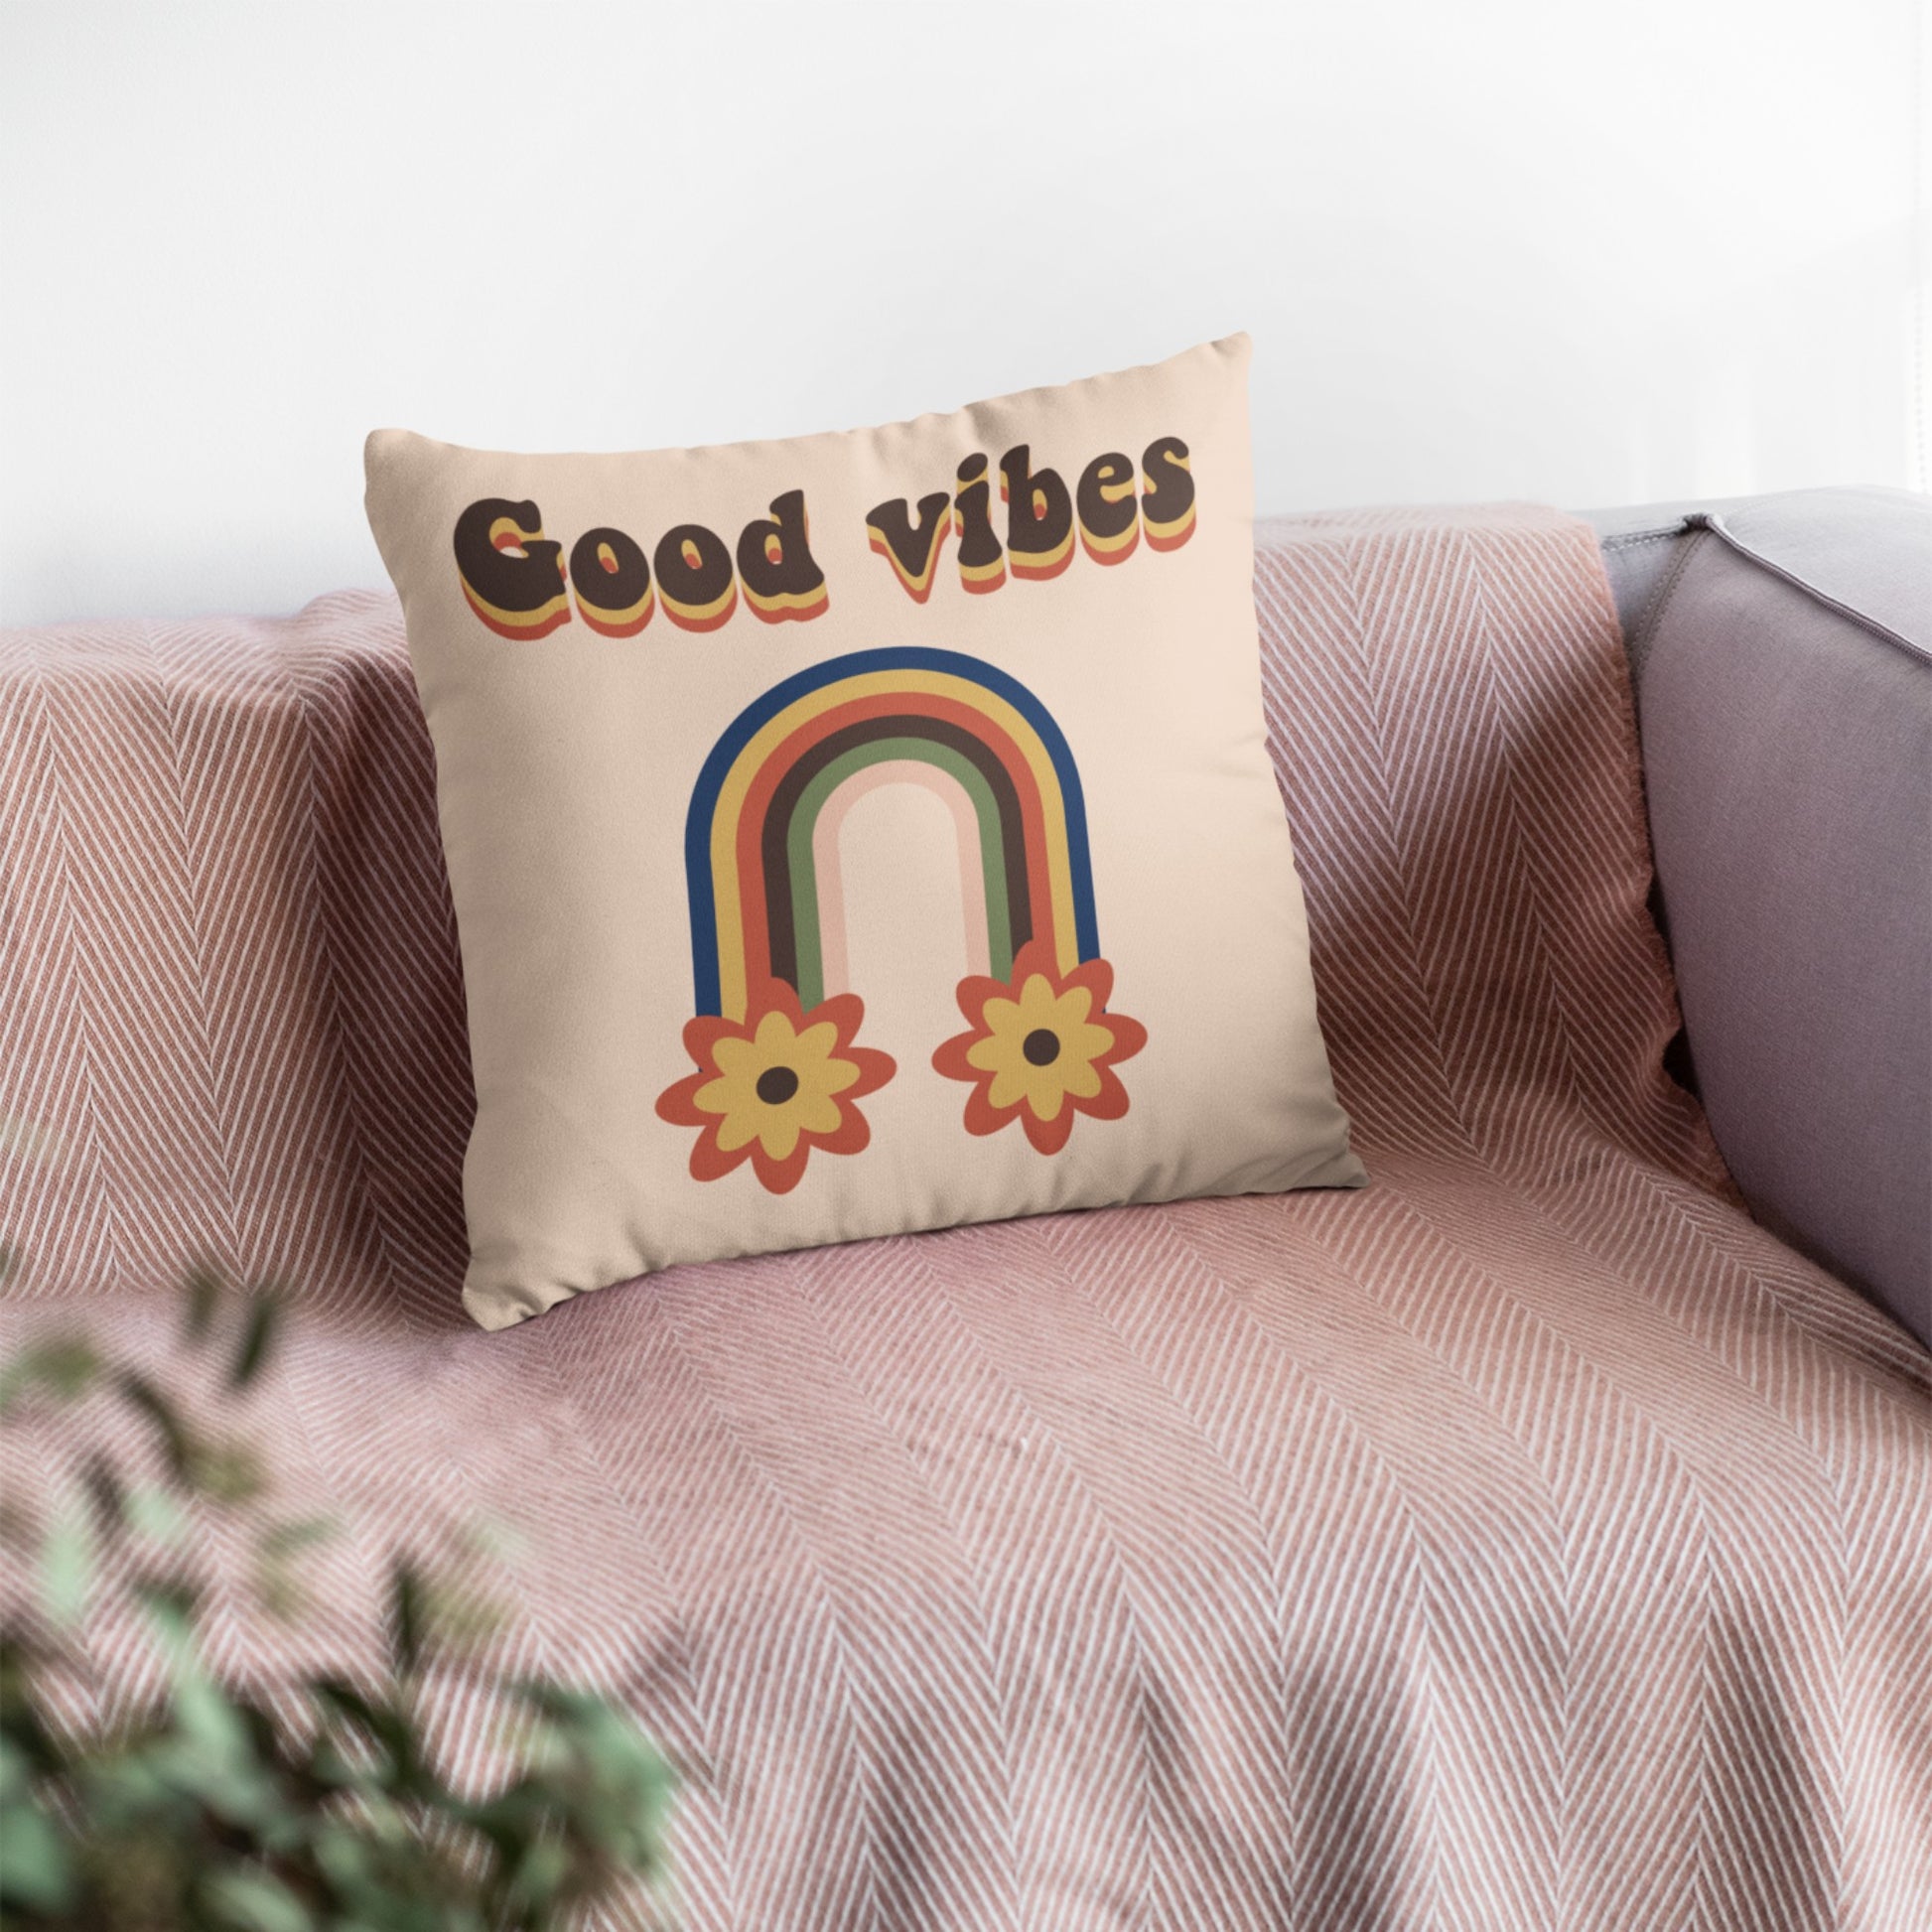 Homeezone's Good Vibes Pillowcase